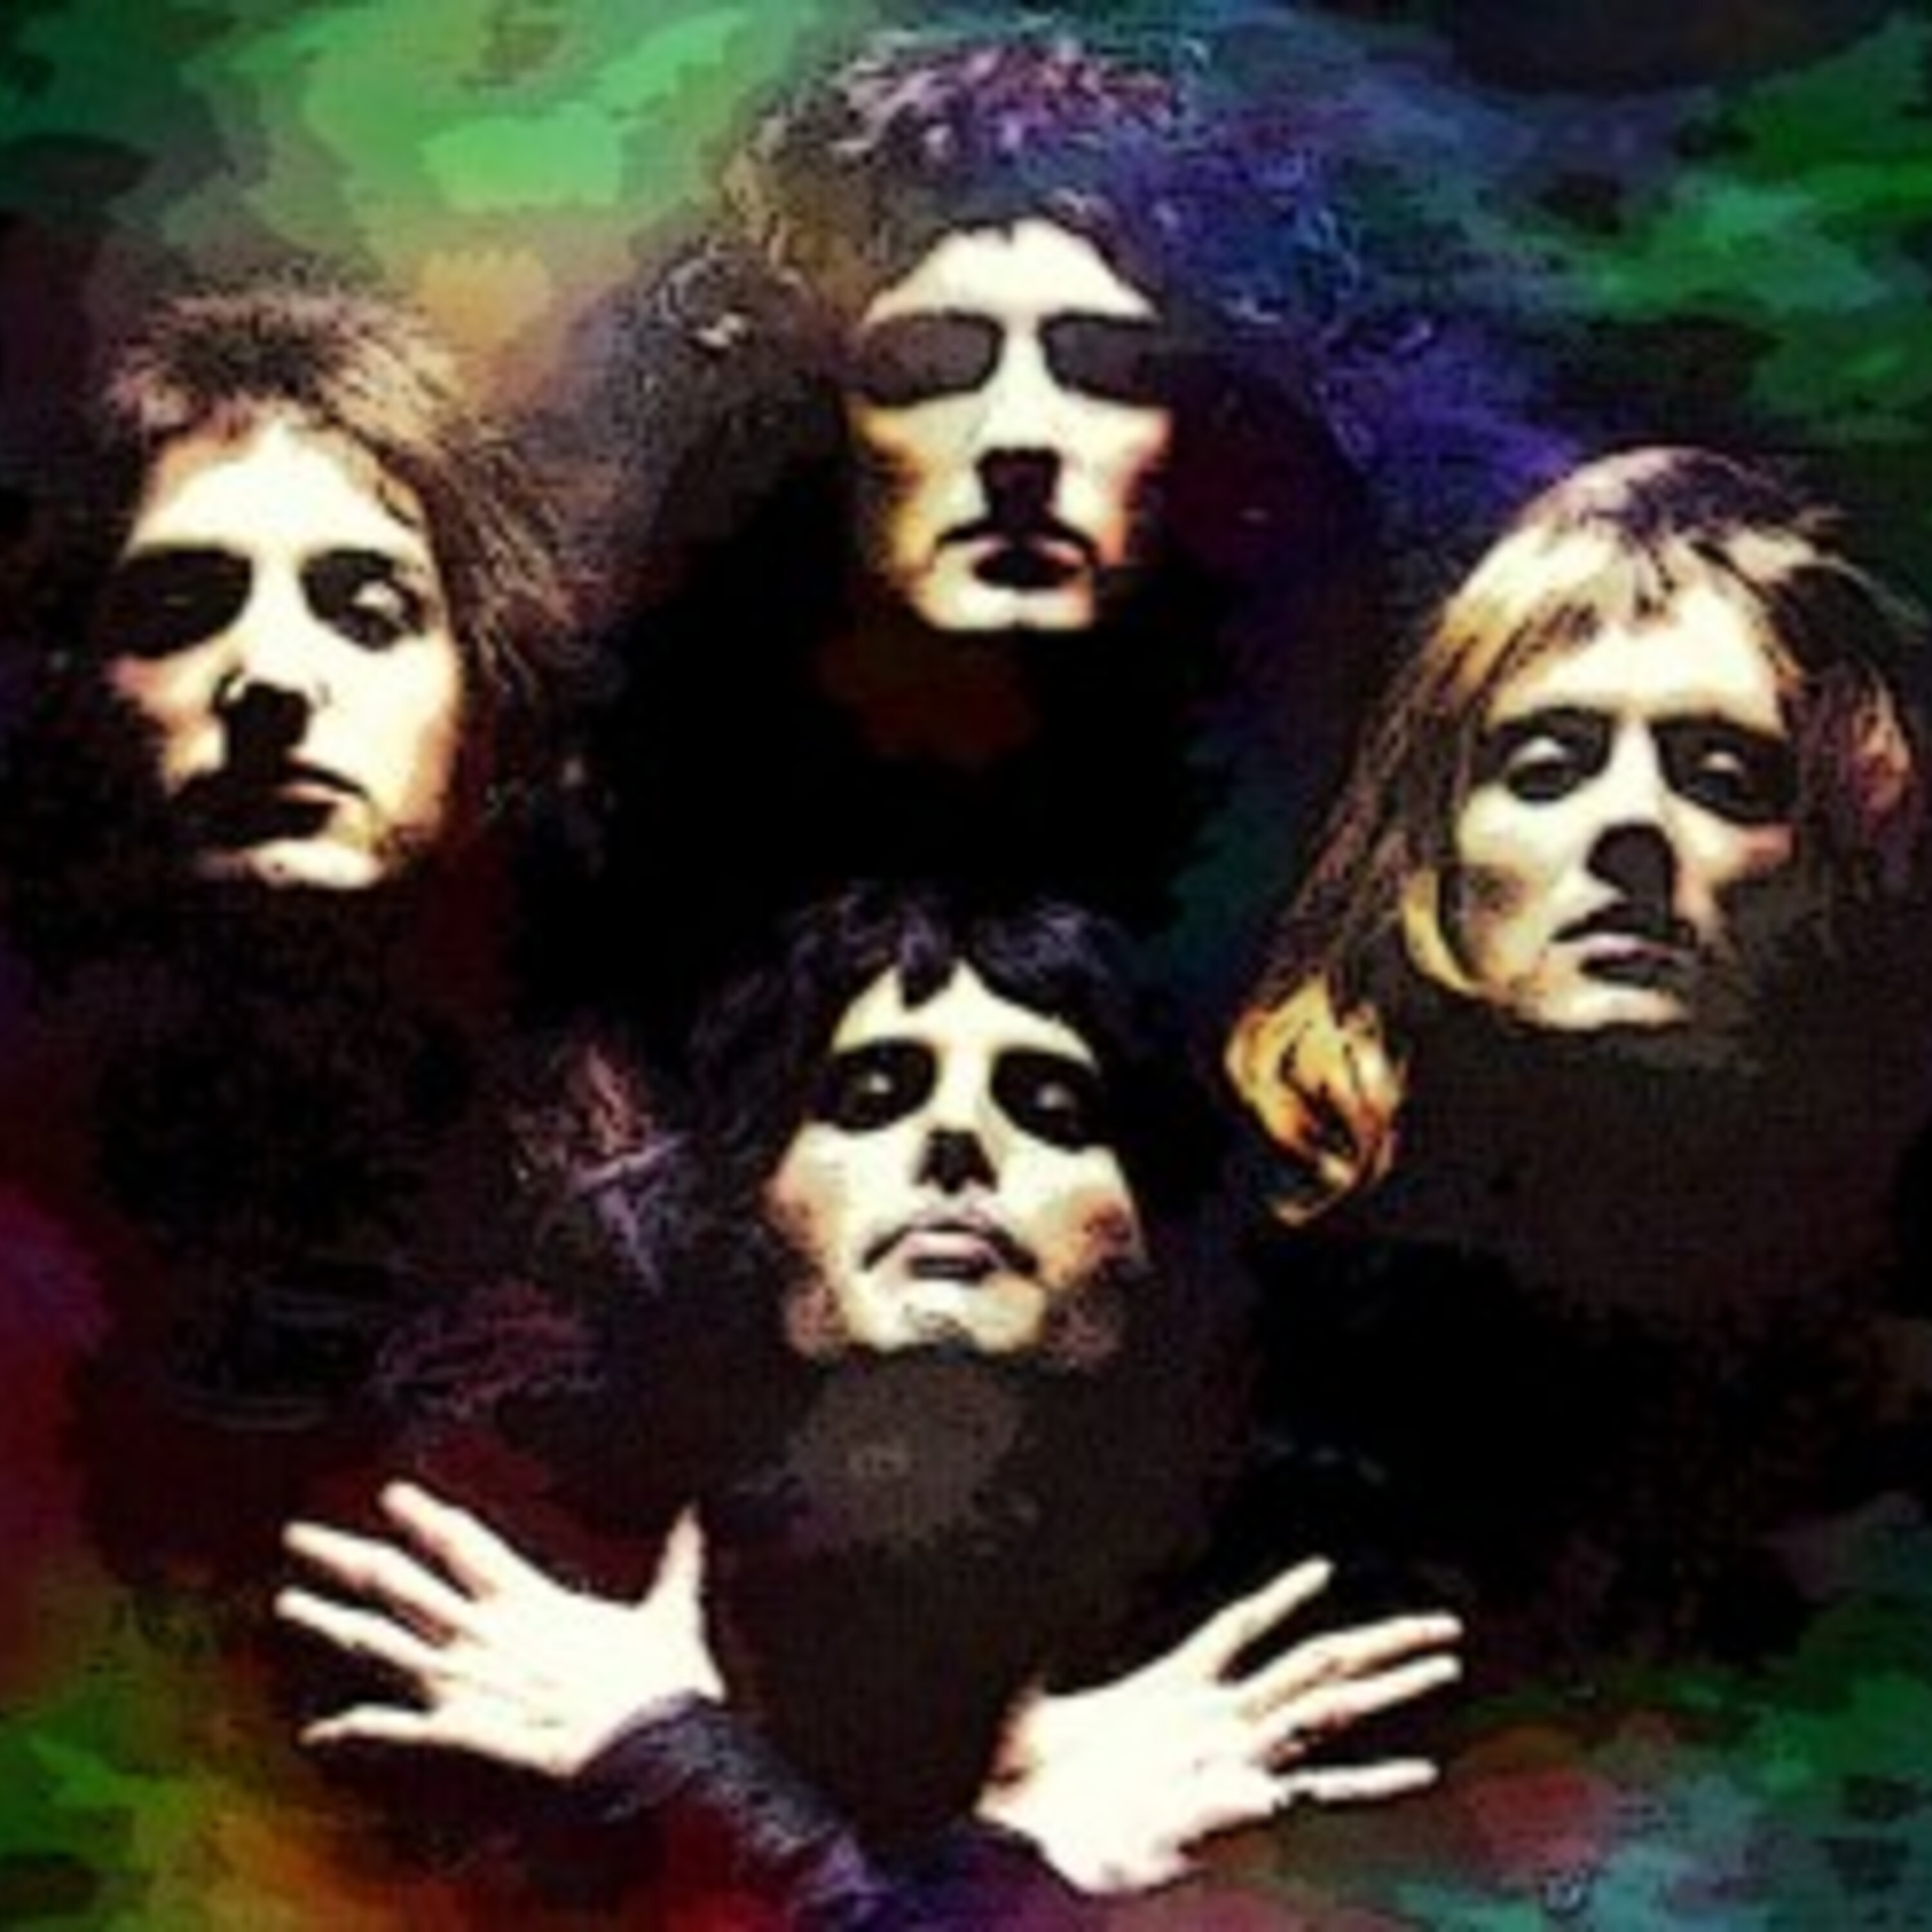 275 – Bohemian Rhapsody